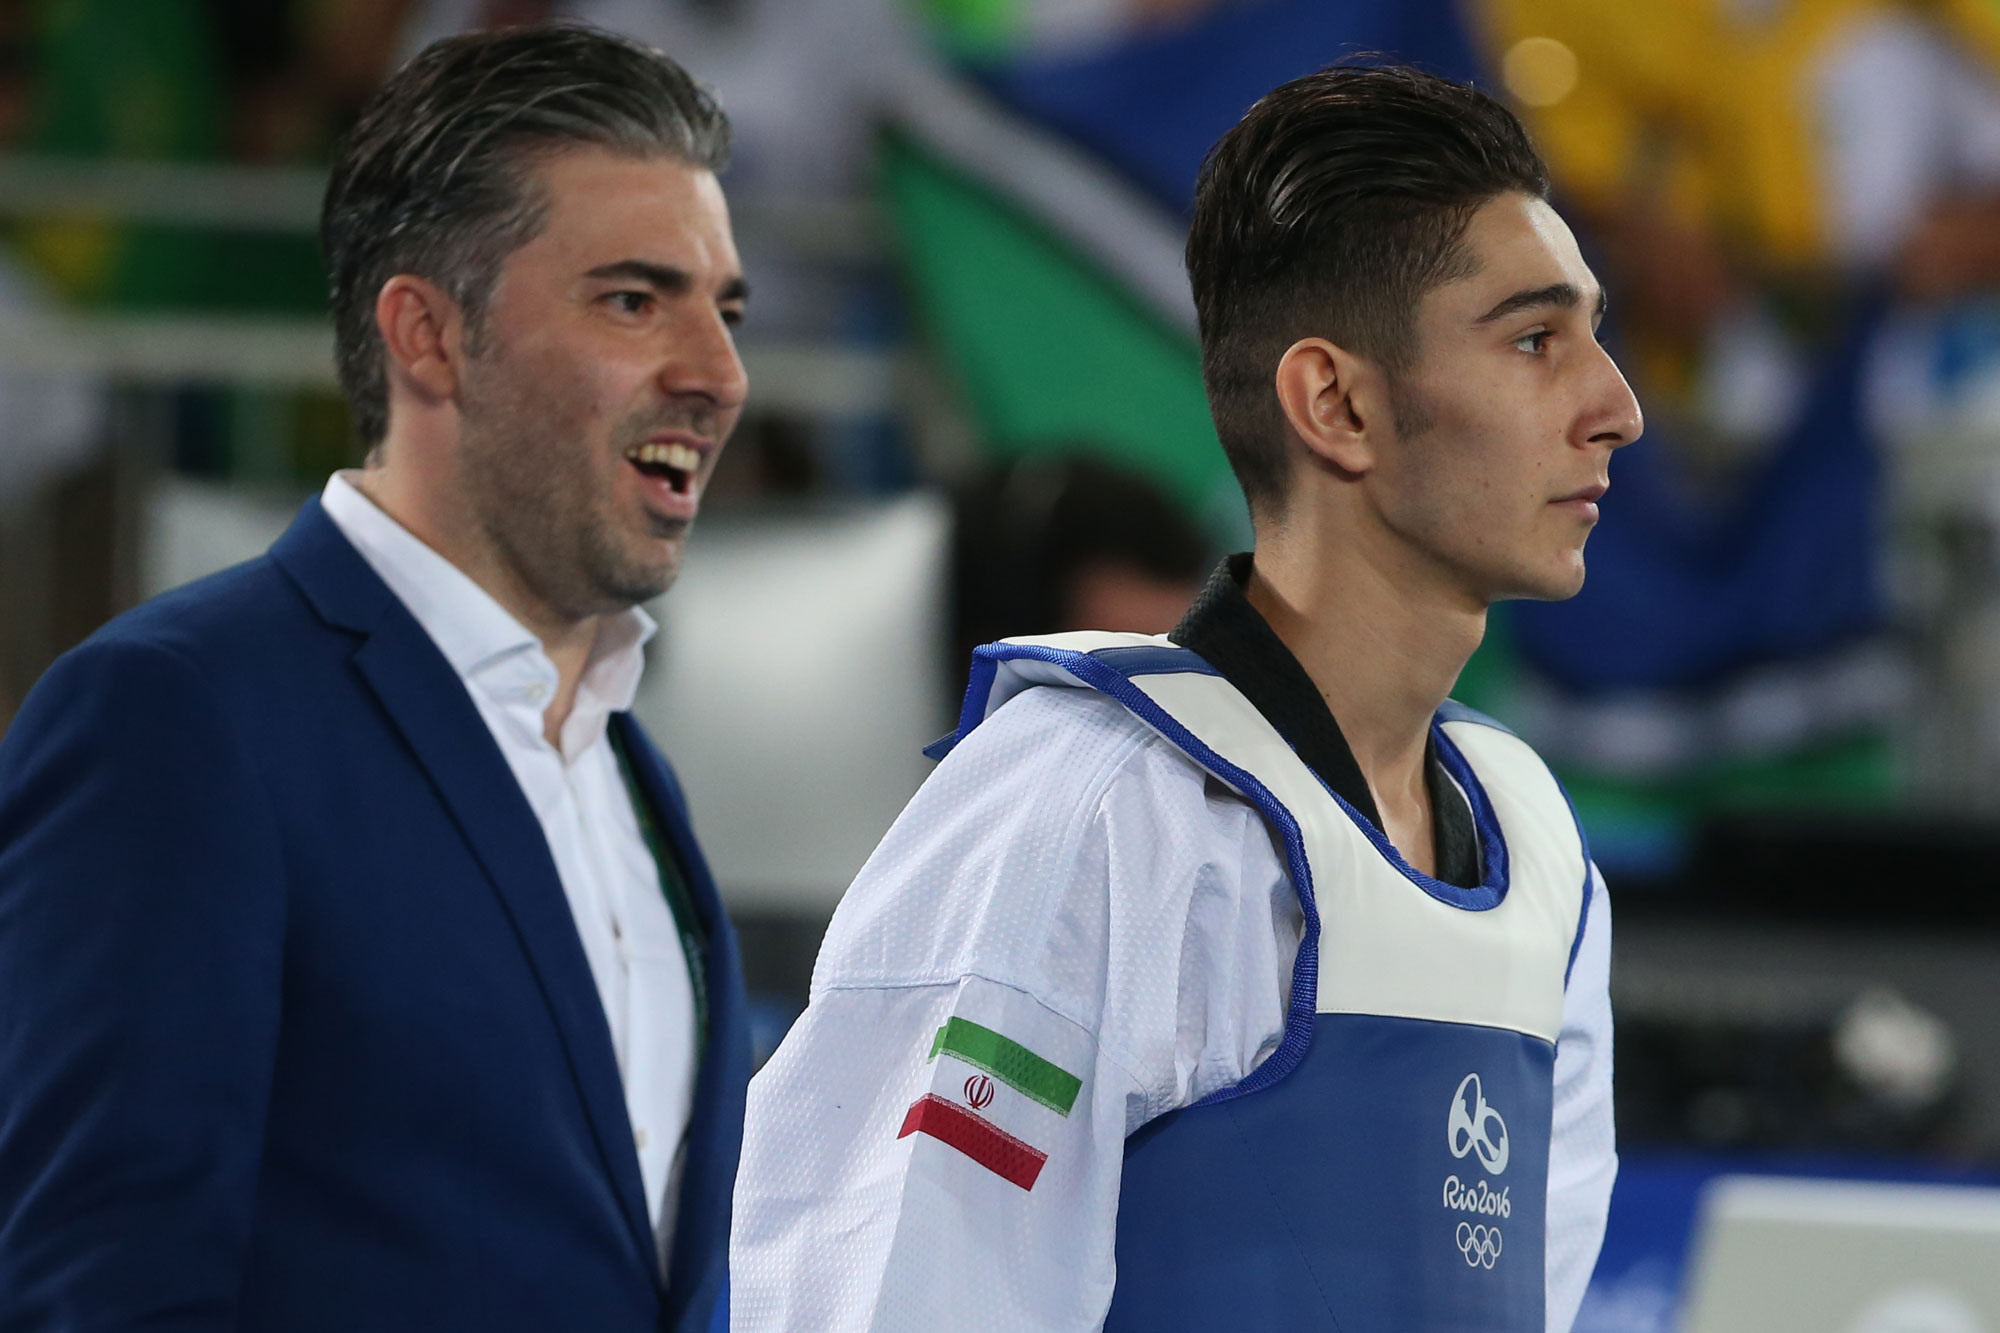 گزارش تصویری تابناک از حذف فرزان عاشورزاده از تکواندوی المپیک